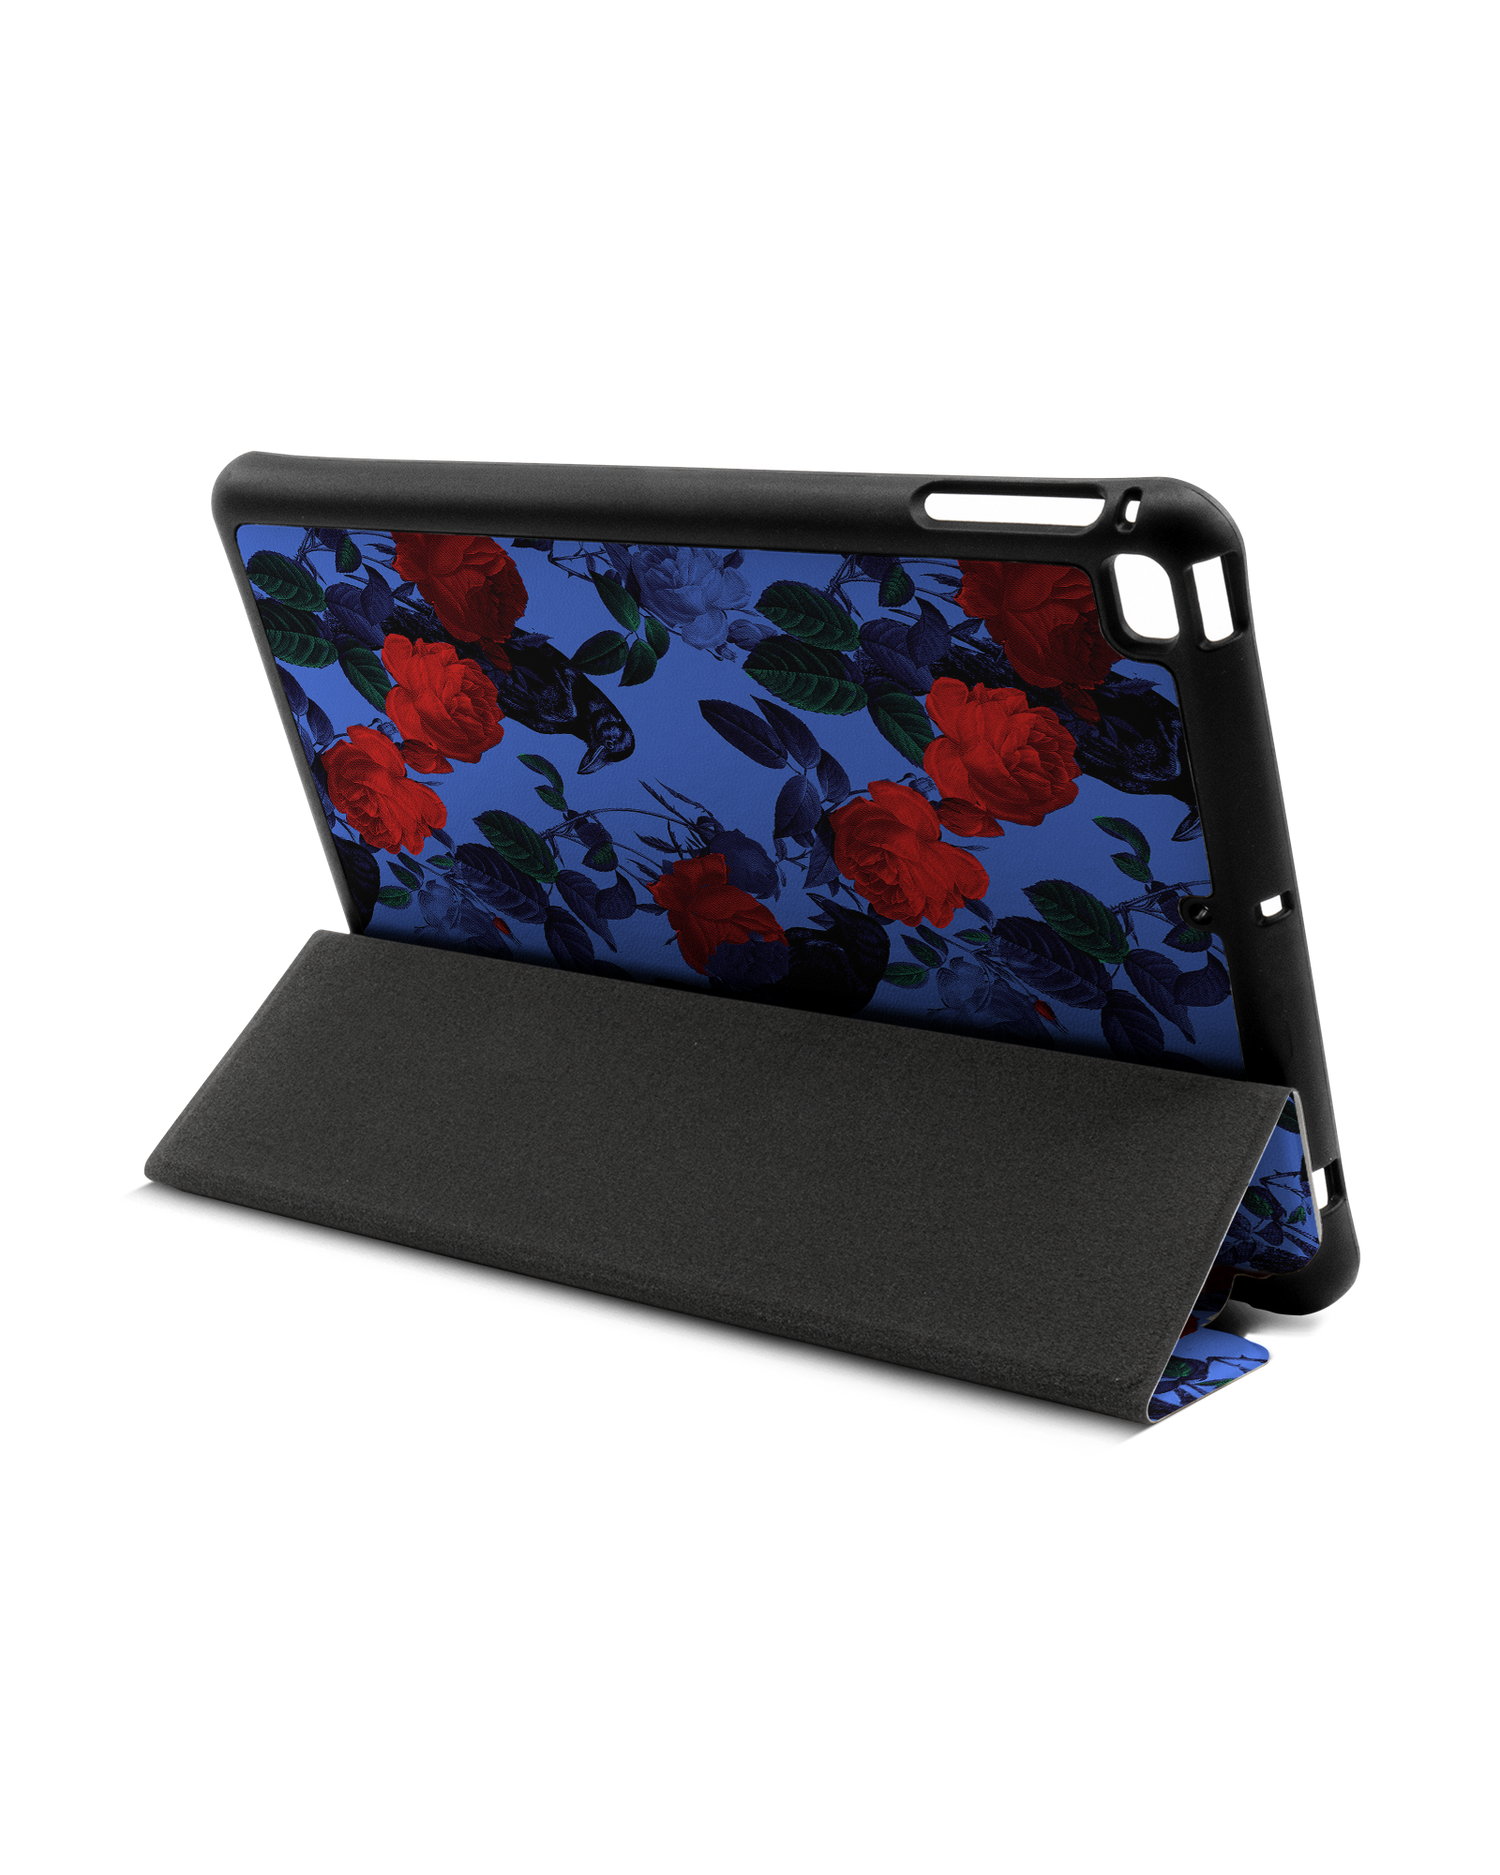 Roses And Ravens iPad Hülle mit Stifthalter Apple iPad mini 5 (2019): Aufgestellt im Querformat von hinten